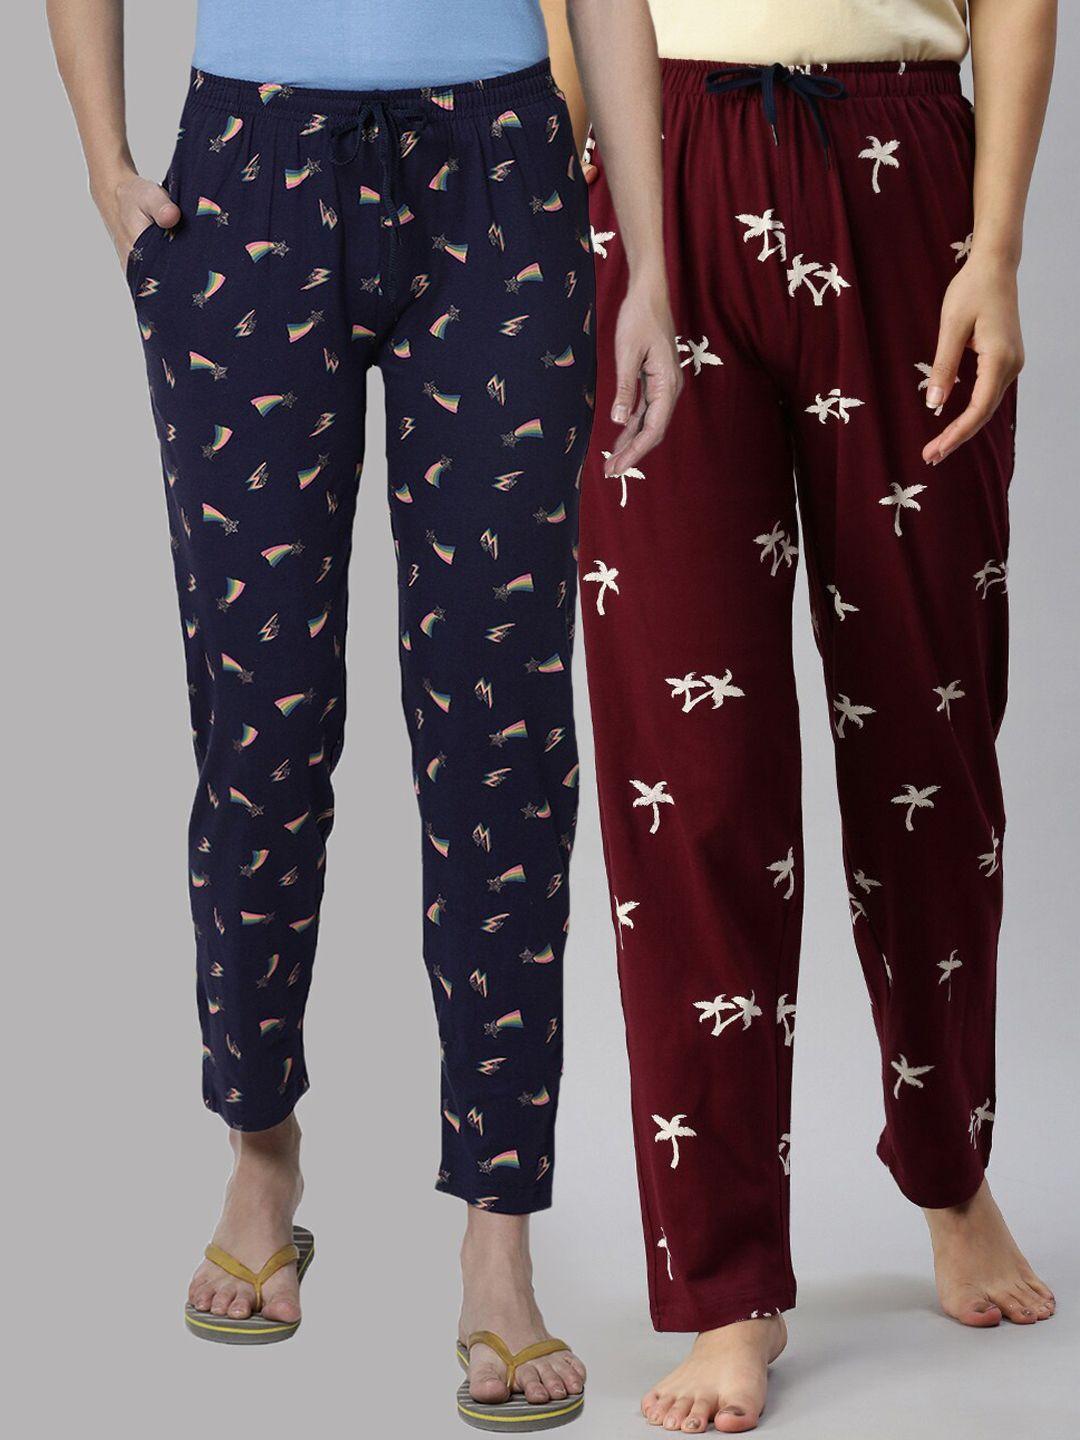 kryptic women pack of 2 navy blue & maroon cotton printed pyjamas